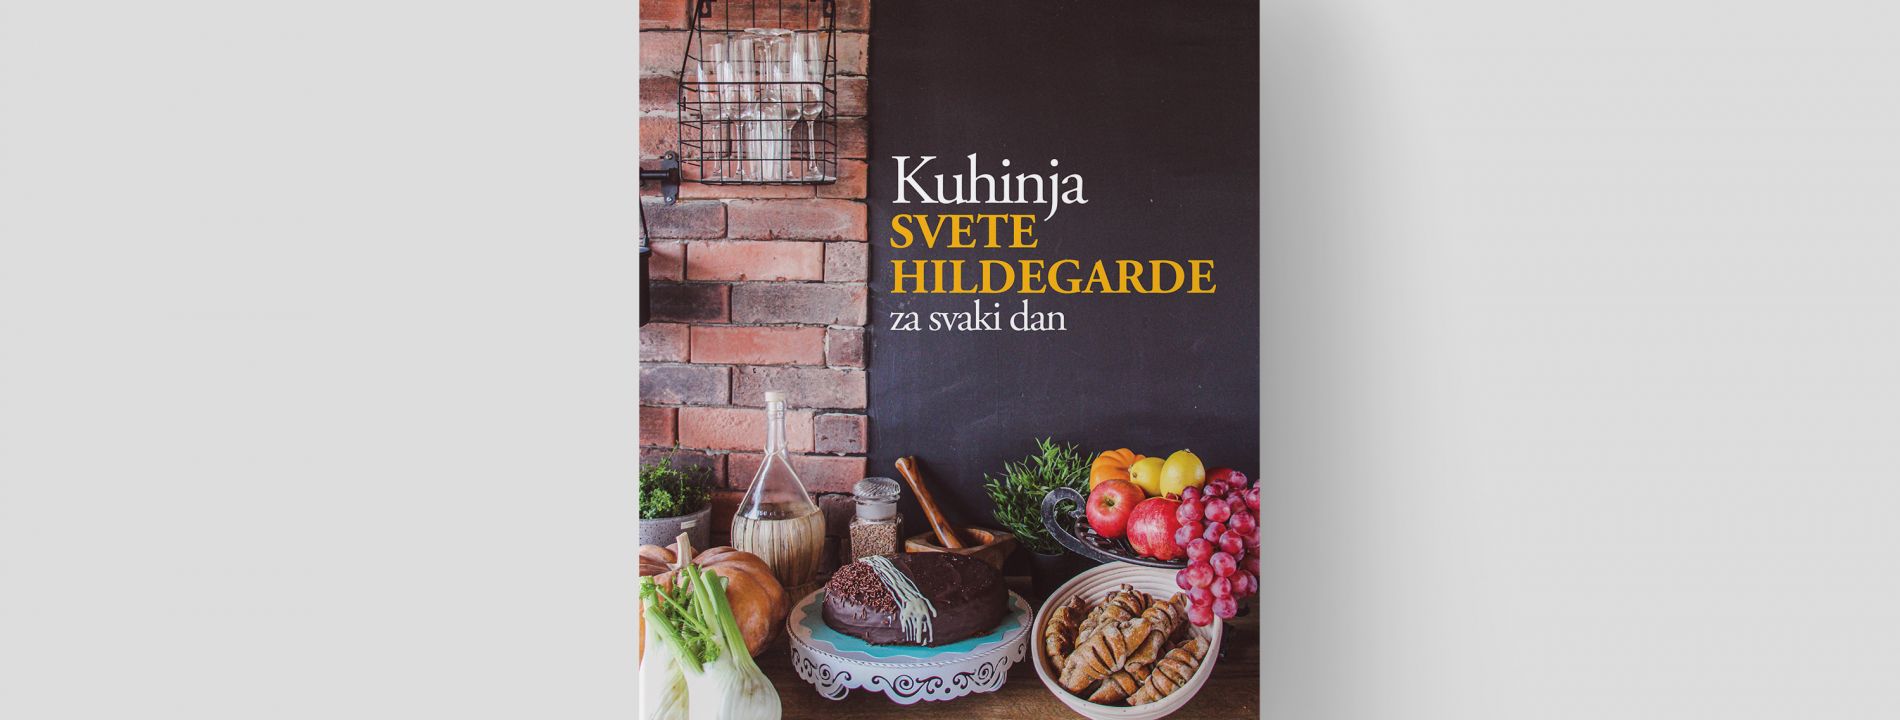 Knjiga autorice Karmele Vukov-Colić nastala prema receptima u gastro emisiji 'Kuhinja sv. Hildegarde'.